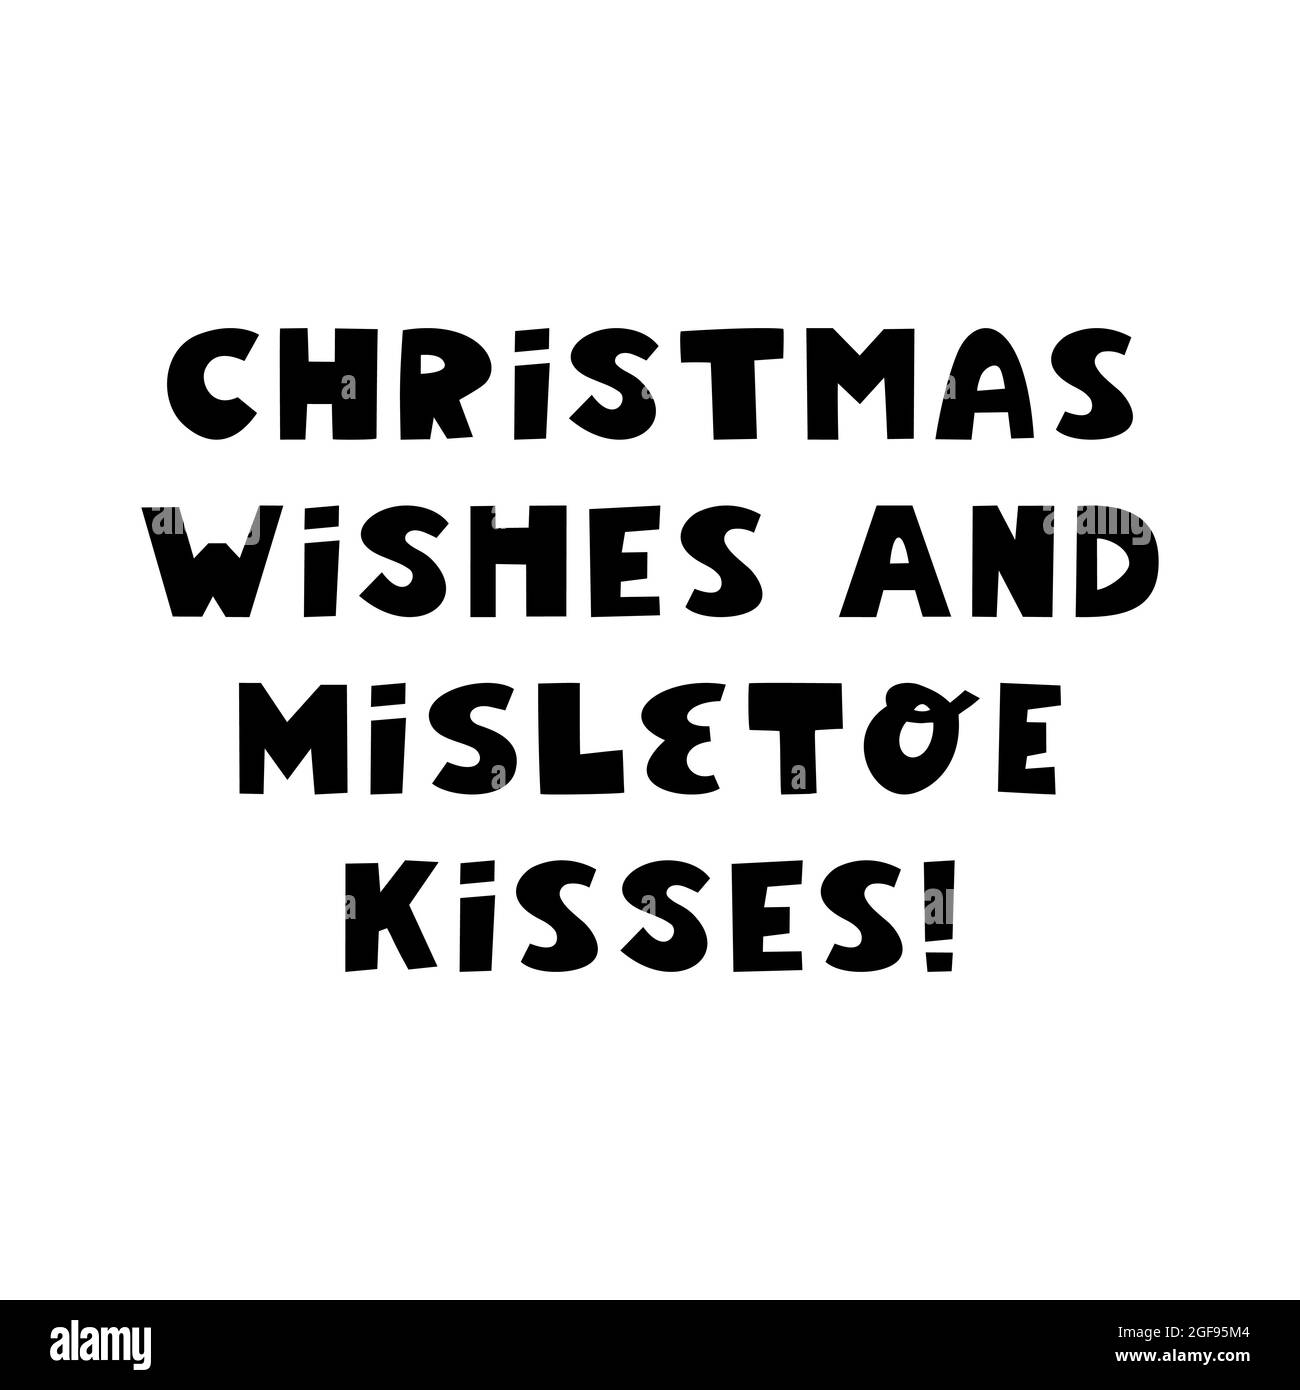 Sự kết hợp giữa lời chúc Giáng Sinh và nụ hôn nguyệt quế trắng tạo nên một bức tranh tuyệt vời về tình yêu và sự ấm áp. Hãy cùng xem hình ảnh này để cảm nhận sự đong đầy và hạnh phúc trong những ngày đặc biệt của năm.